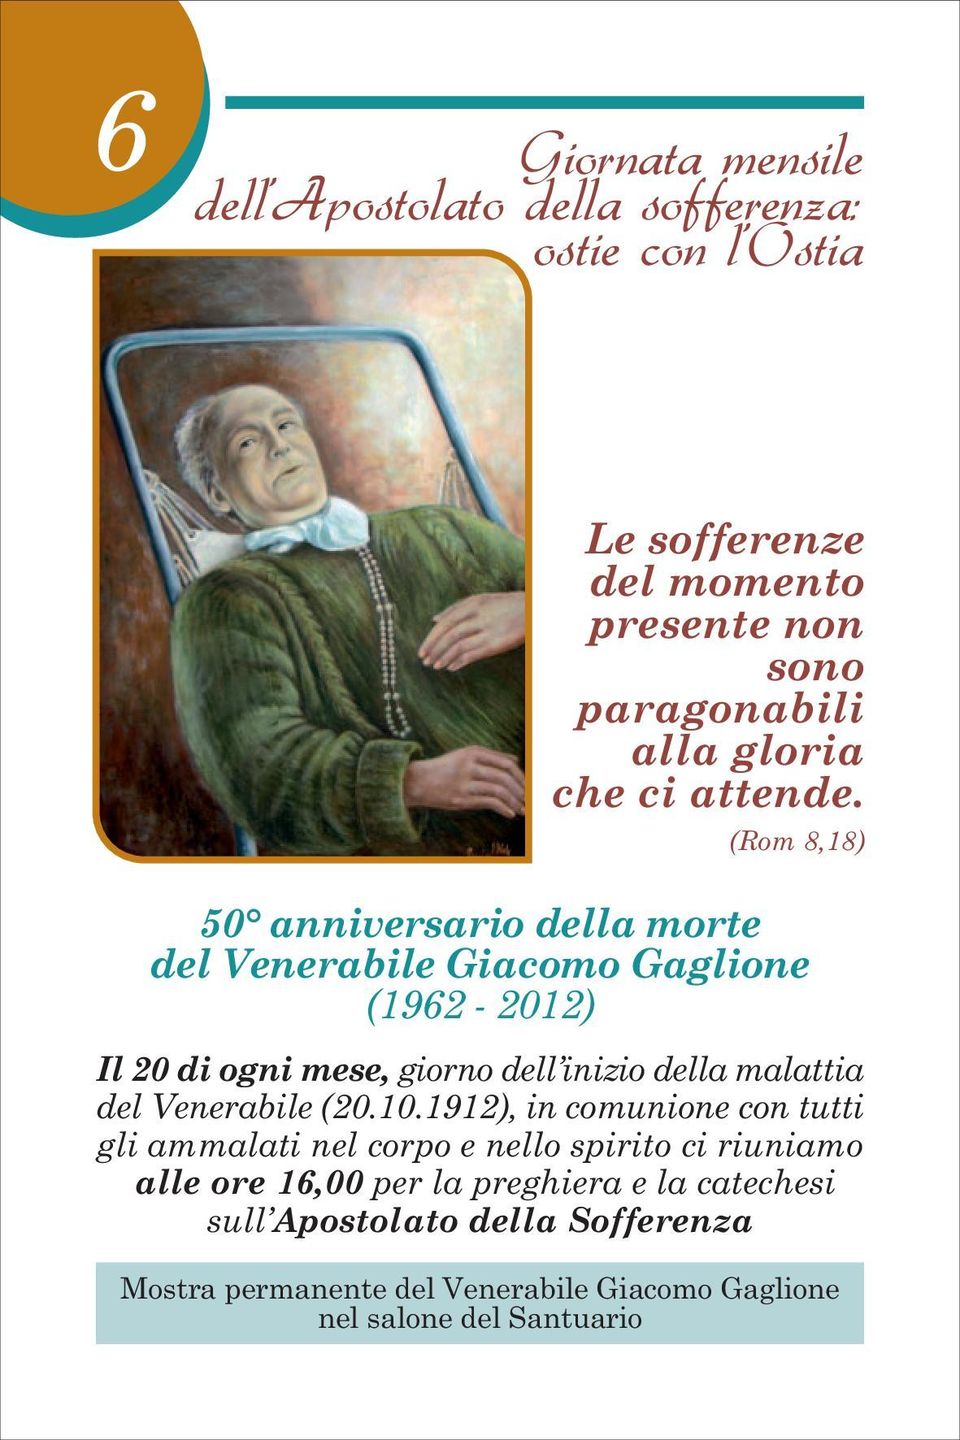 (Rom 8,18) 50 anniversario della morte del Venerabile Giacomo Gaglione (1962-2012) Il 20 di ogni mese, giorno dell inizio della malattia